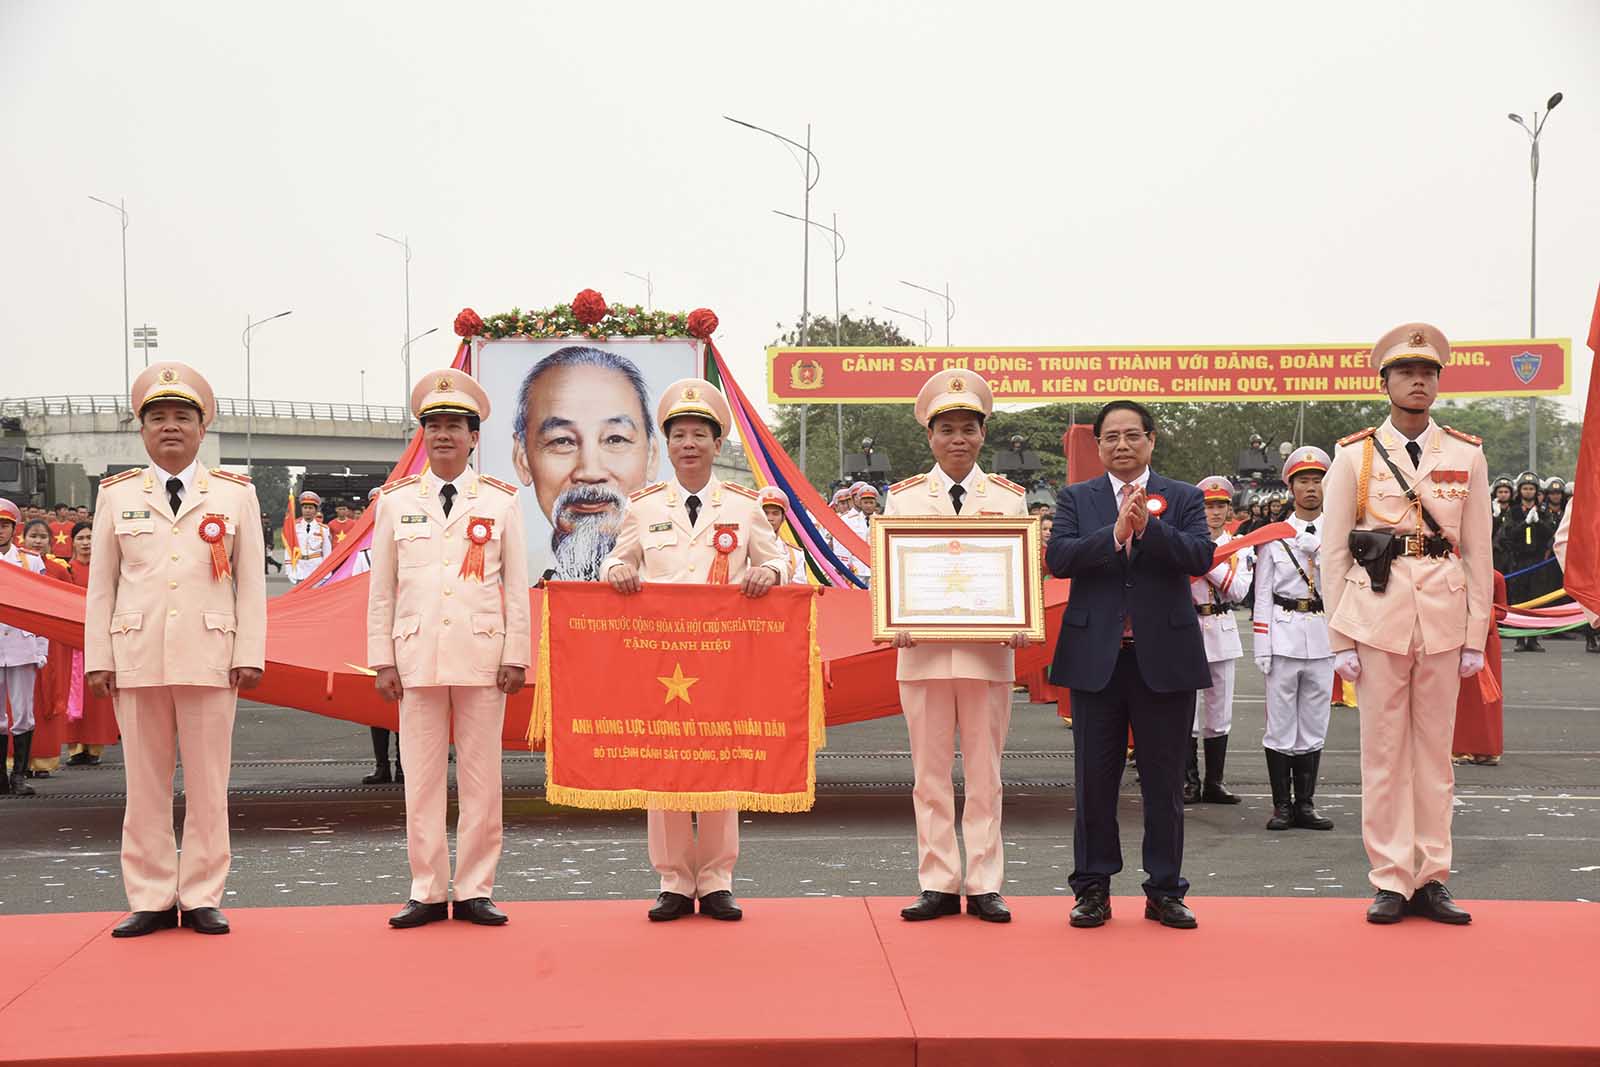 Tại buổi lễ, Thủ tướng Phạm Minh Chính đã trao tặng danh hiệu Anh hùng lực lượng vũ trang nhân dân cho Bộ Tư lệnh Cảnh sát cơ động. Đây là lần thứ 2 Bộ Tư lệnh Cảnh sát cơ động được trao tặng danh hiệu này.